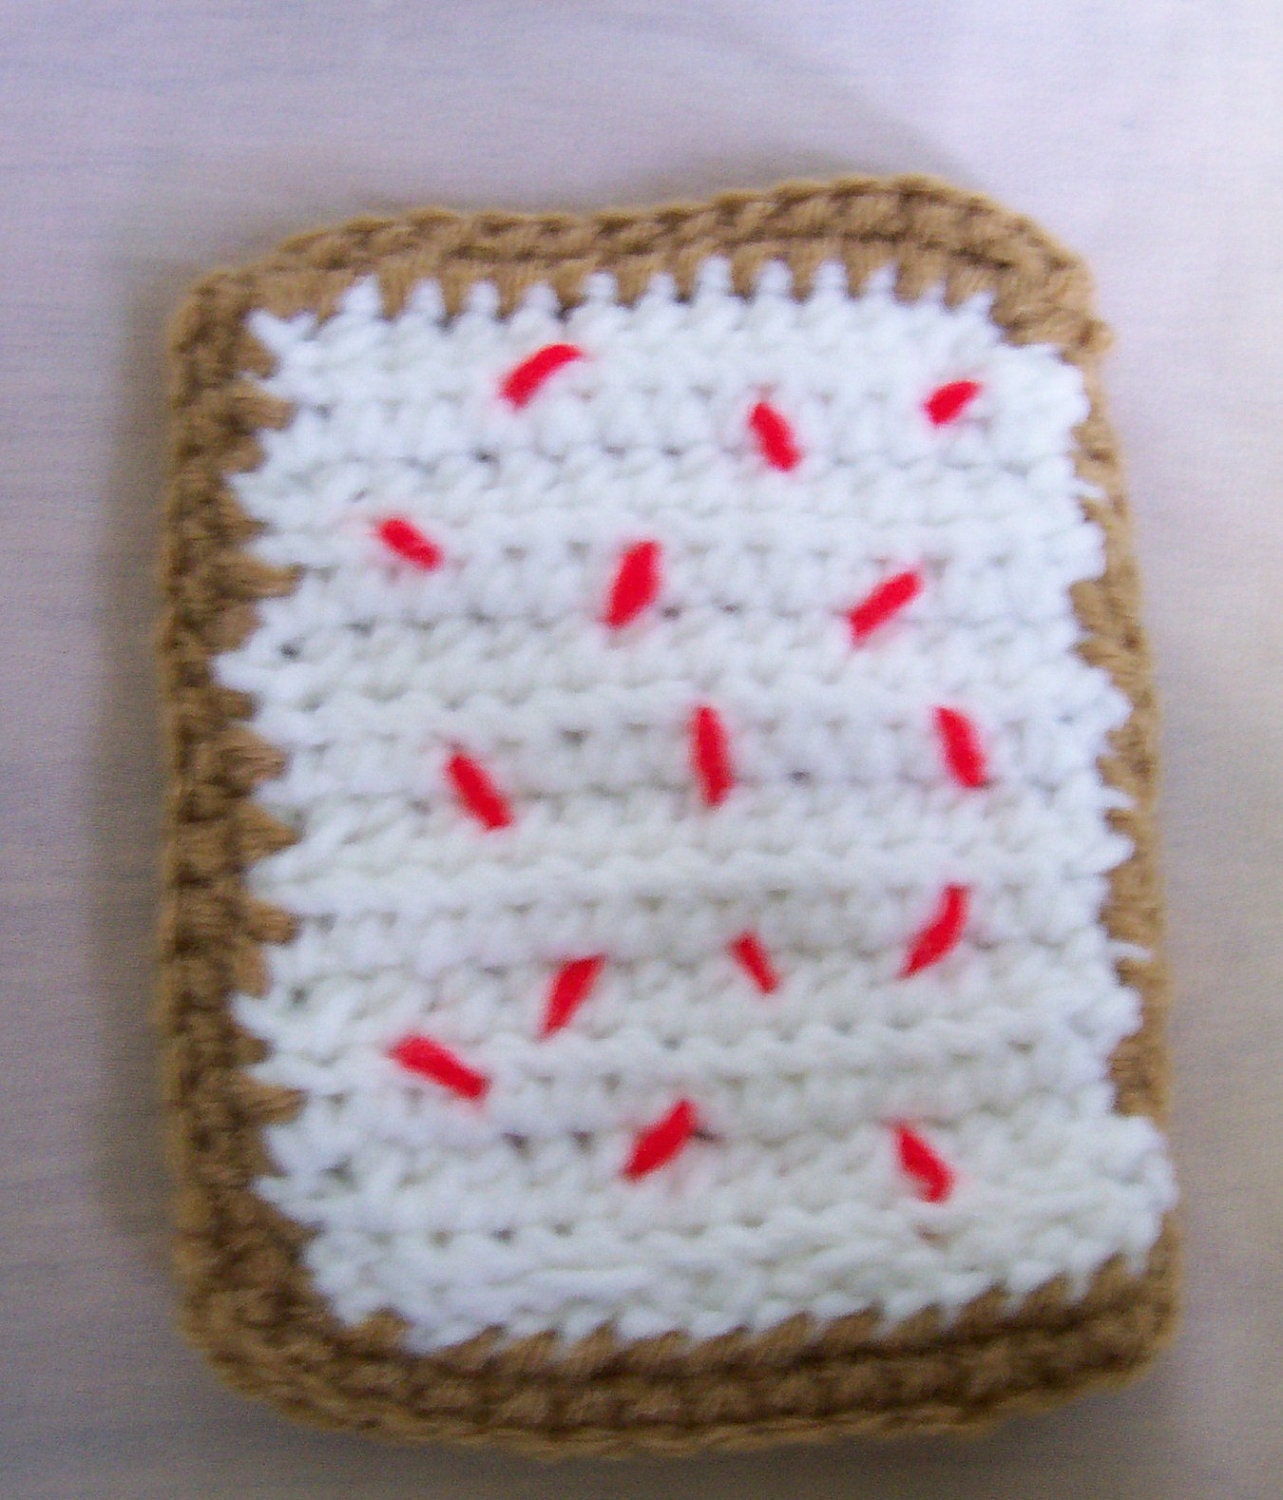 Crochet Toast